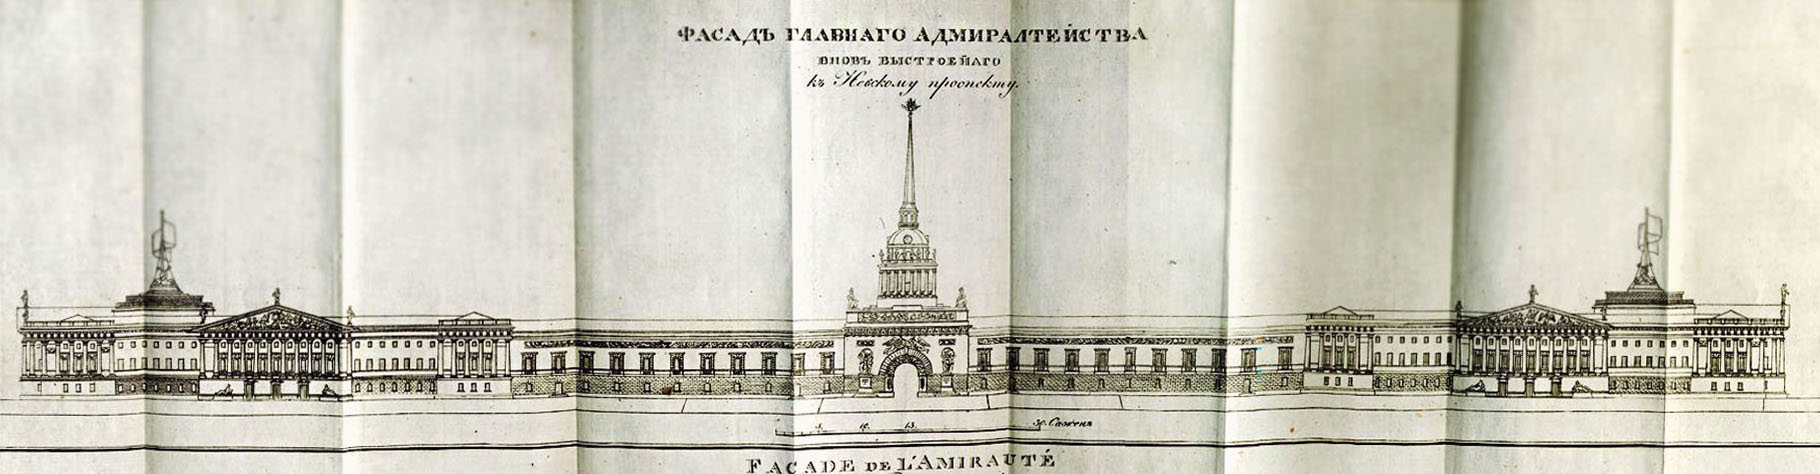 Адмиралтейство. Гравюра из книги "Новейший путеводитель по Санктпетербургу" (1820 г.)